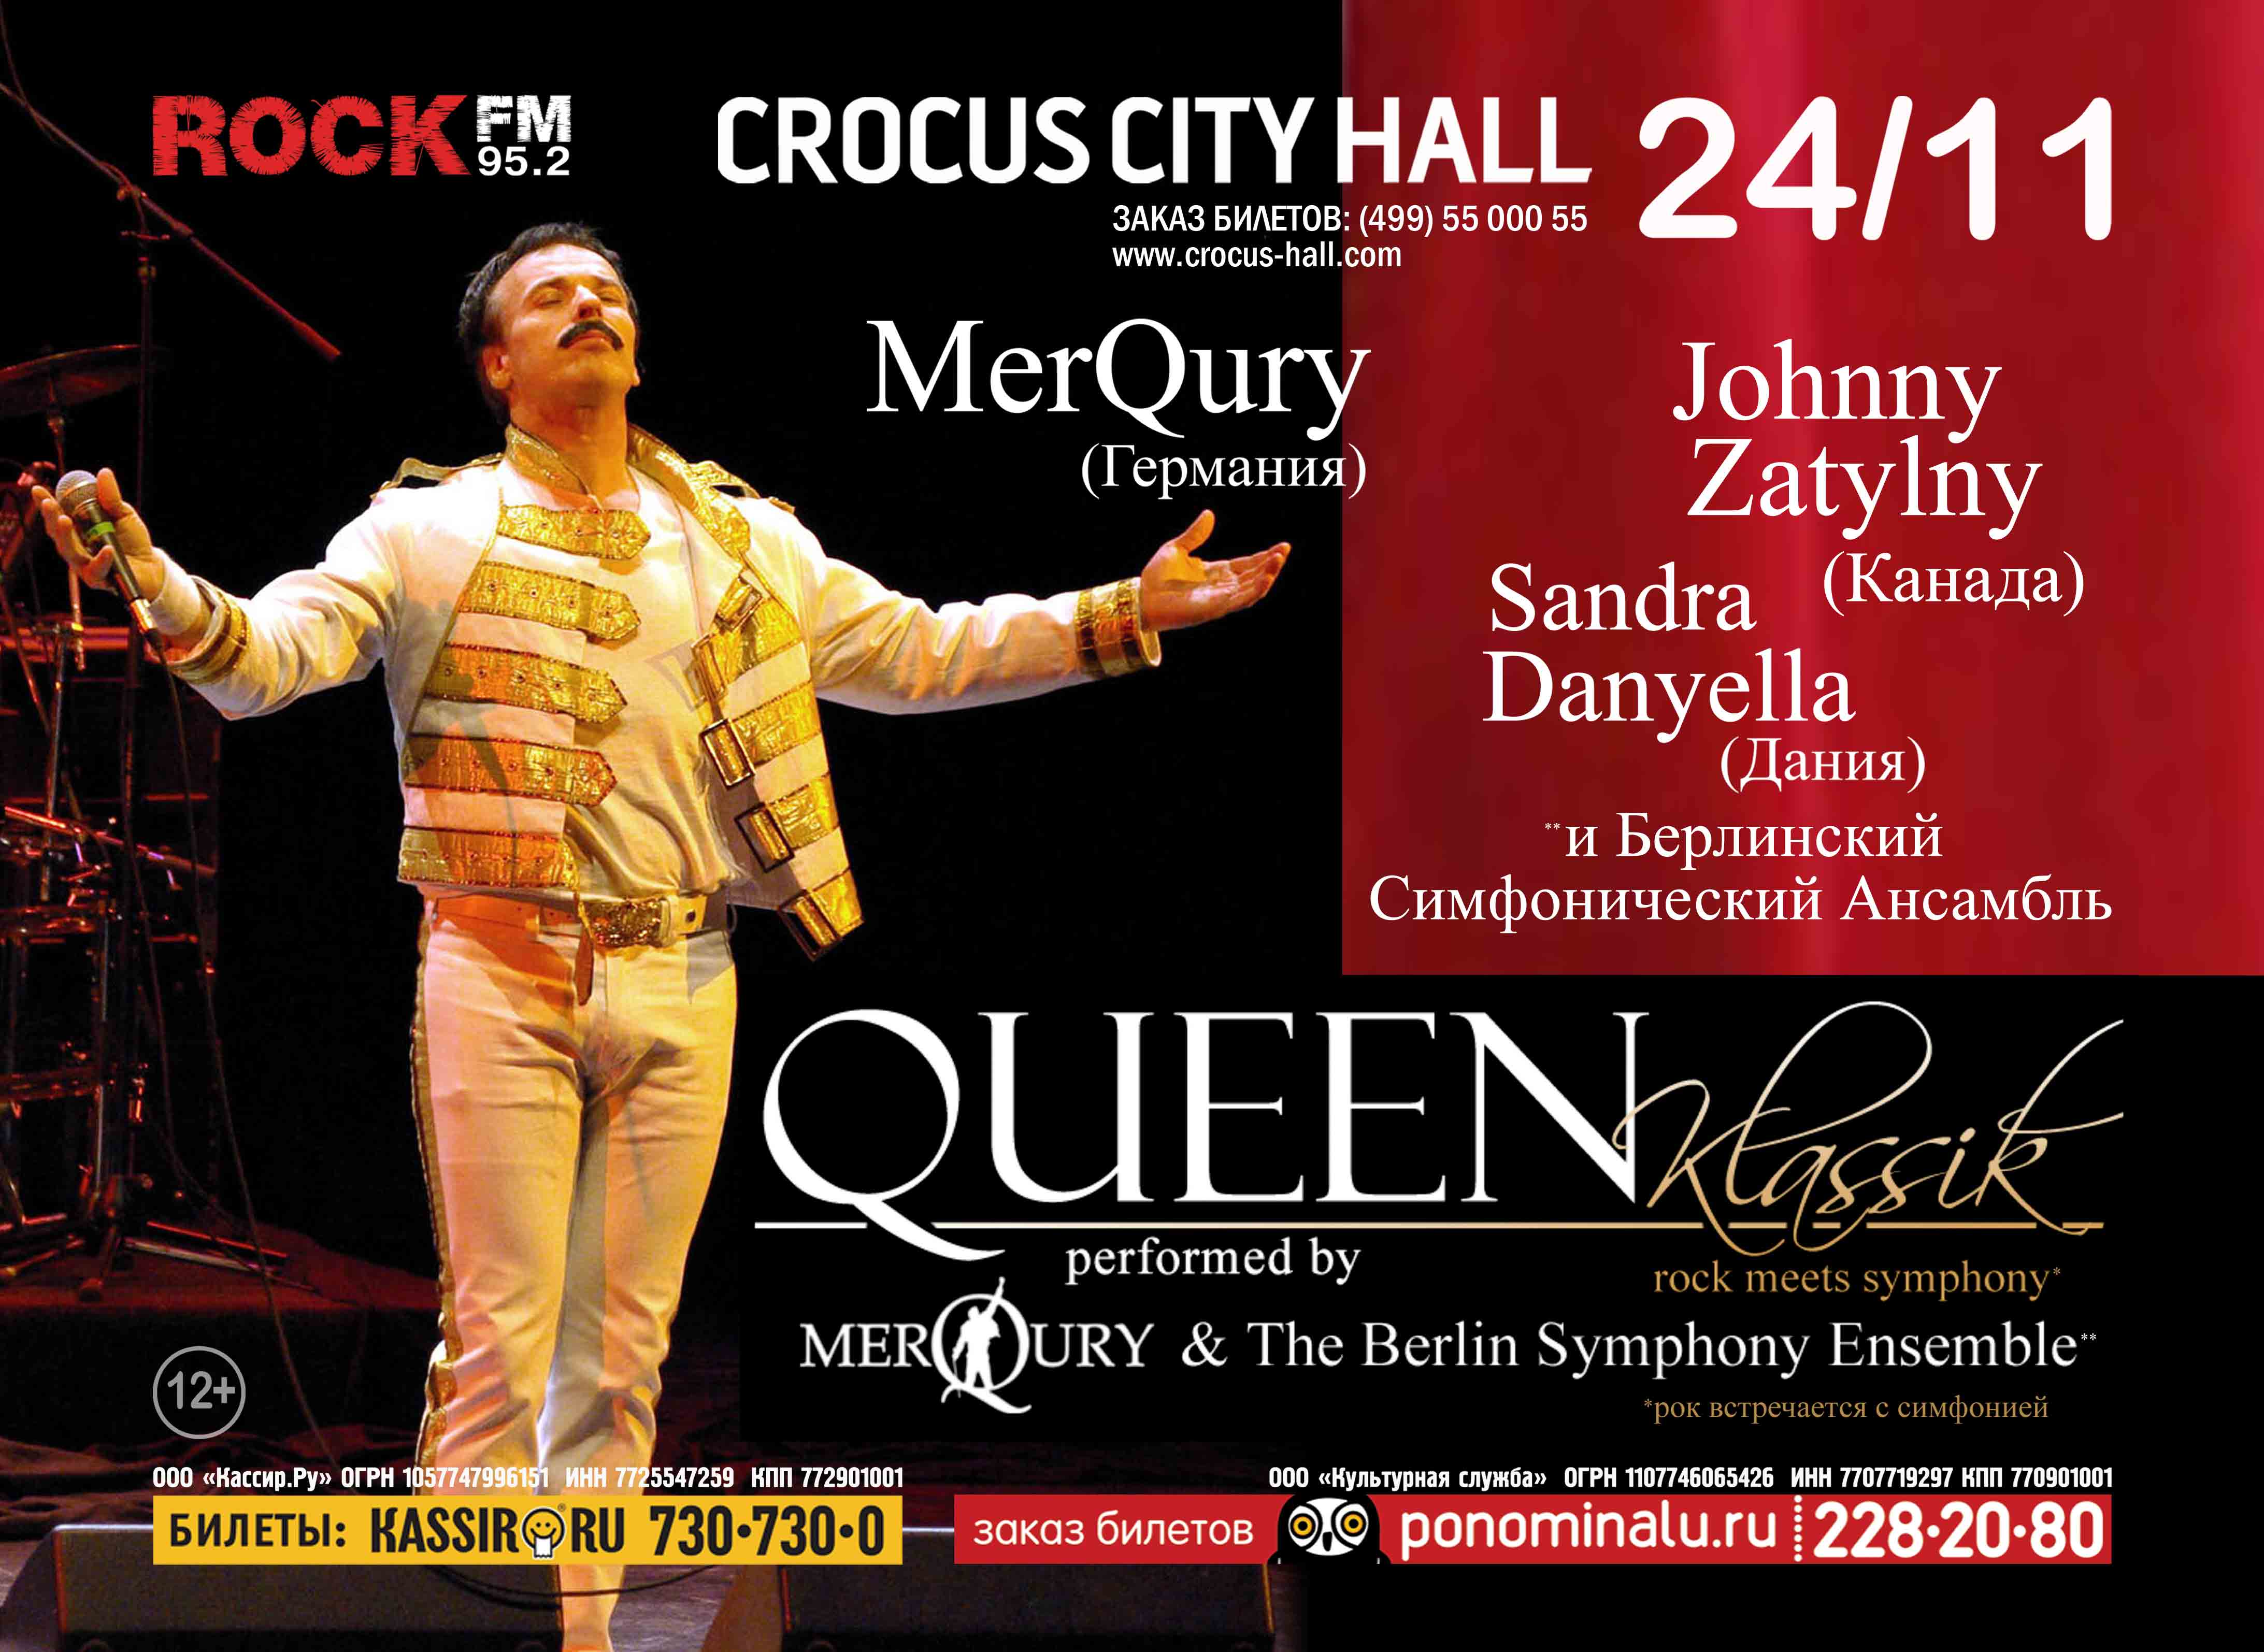 Крокус мероприятия сегодня афиша на сегодня. Queen Classics Крокус Сити Холл. Афиша концерта Крокус. Квин классика и современность проект.